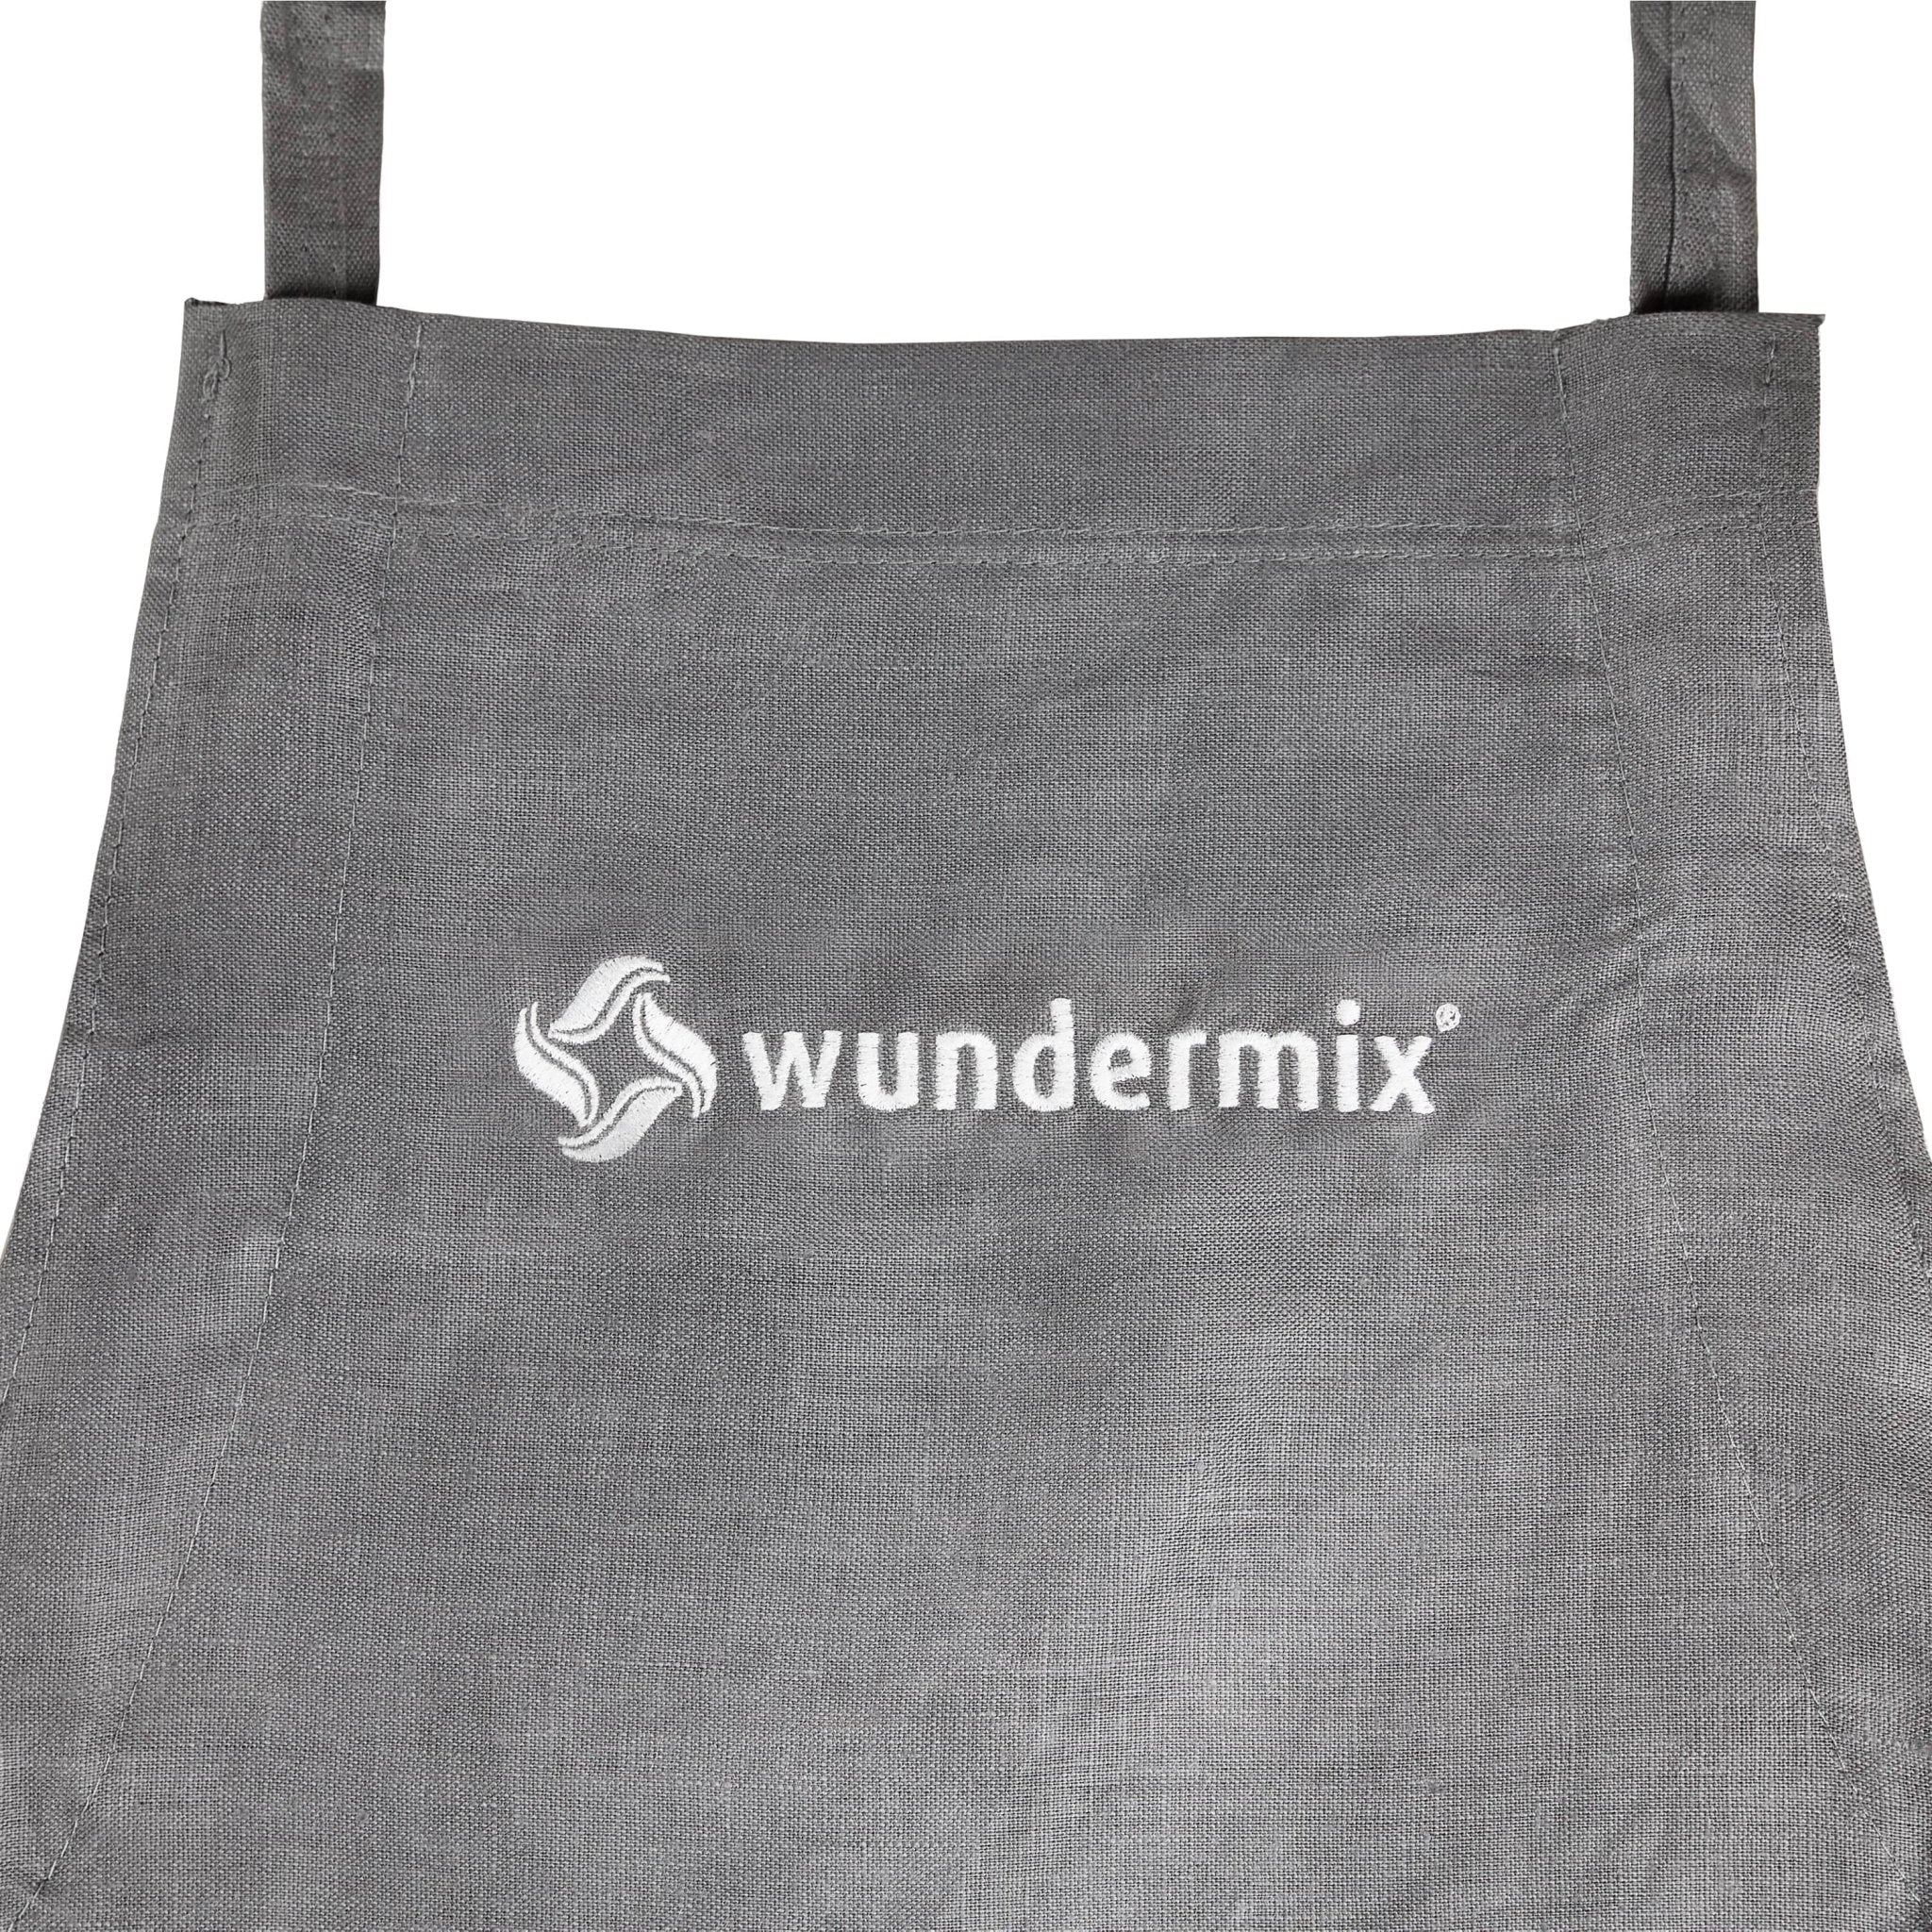 Wundermix Kochschürze - Wundermix GmbH